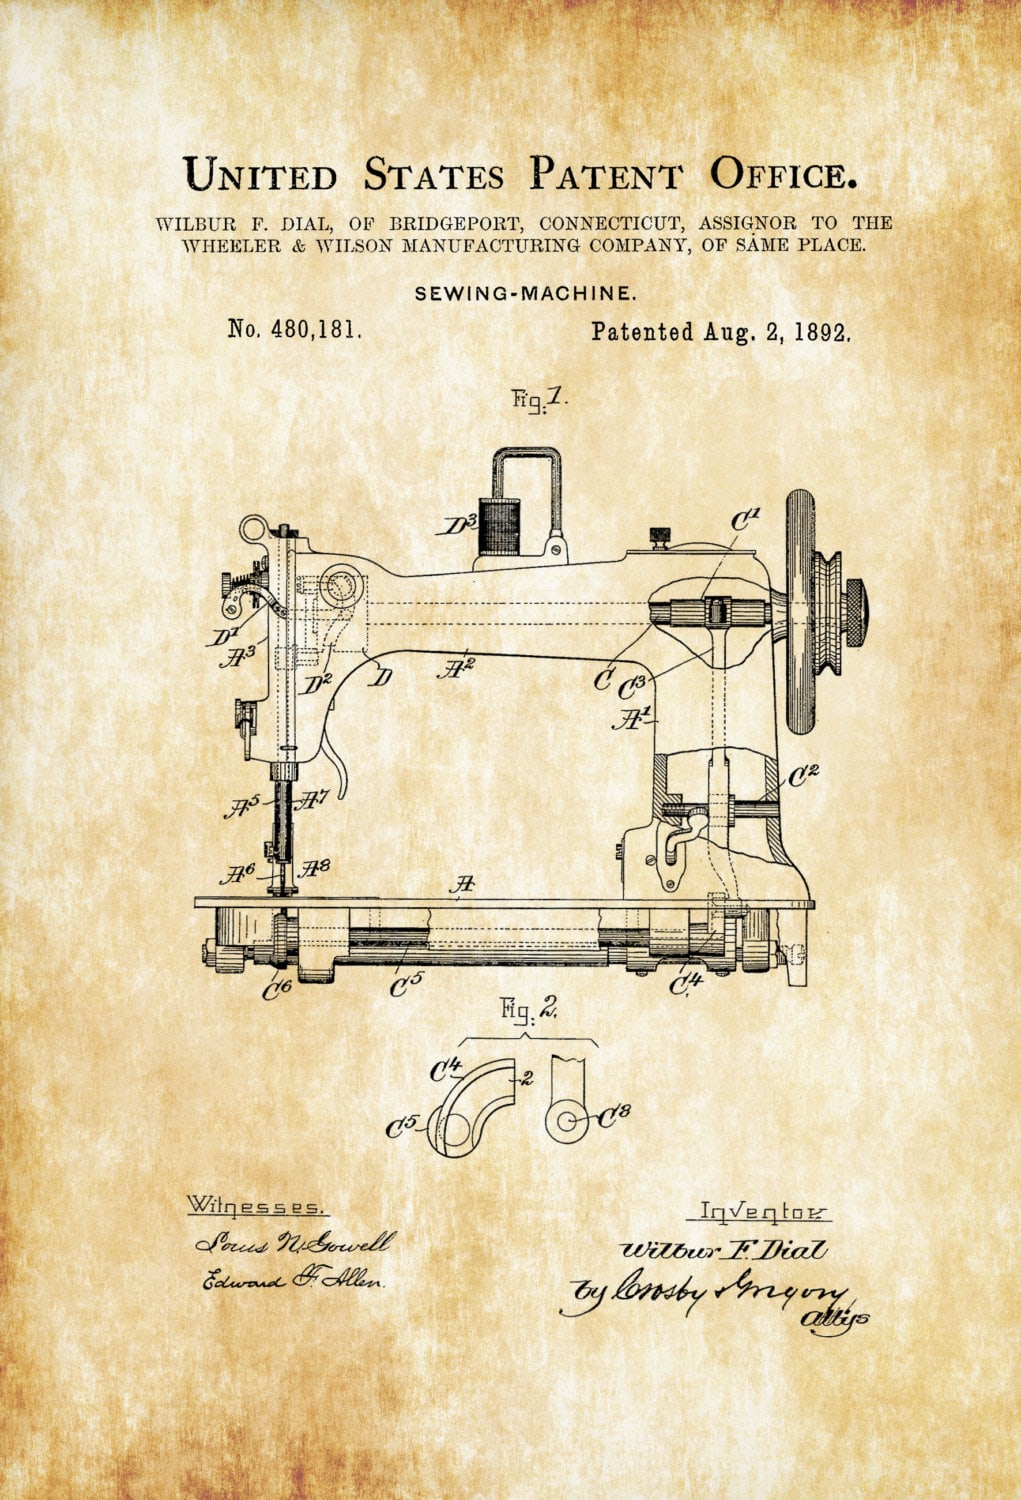 Disegno tecnico di brevetto di una delle prime macchine per cucire industriali